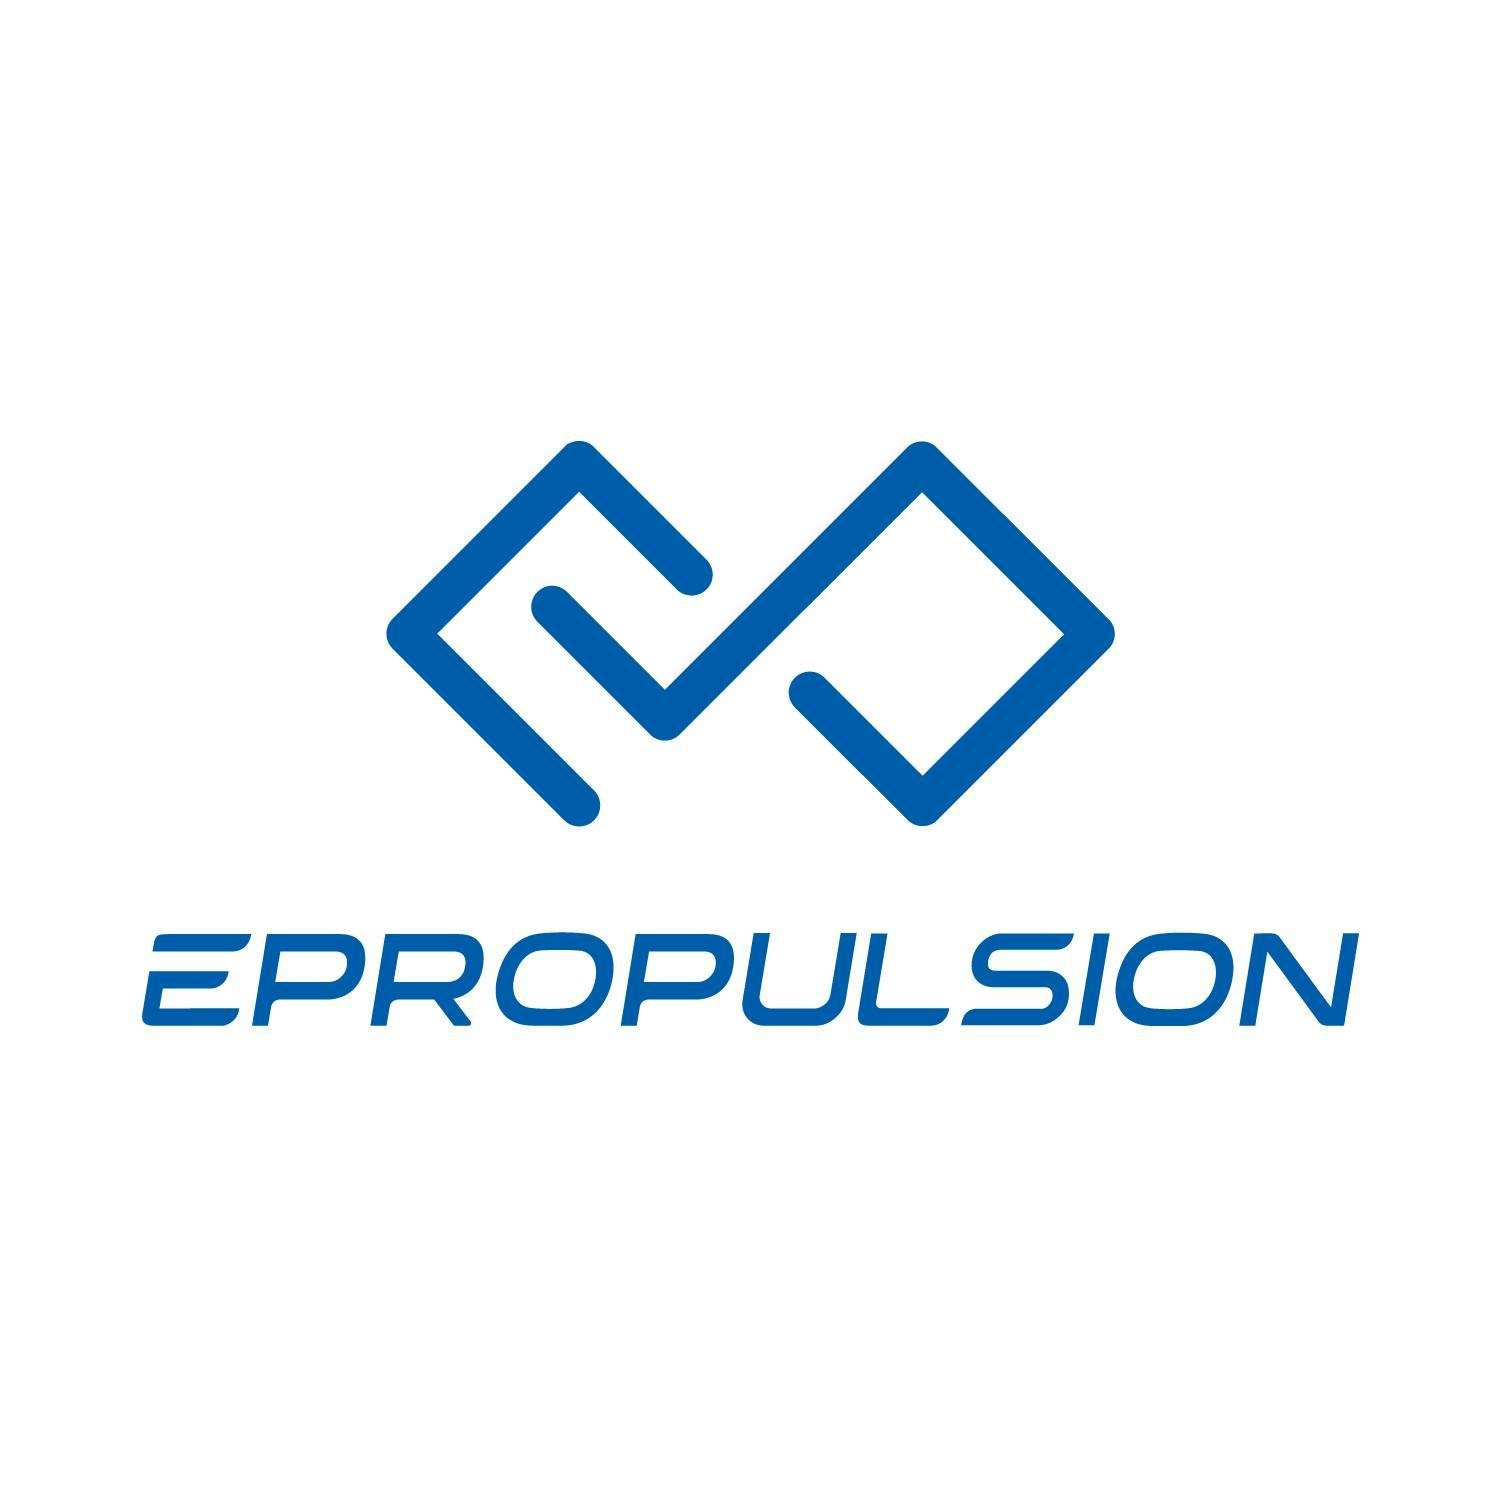 ePropulsion logo (1).jpg